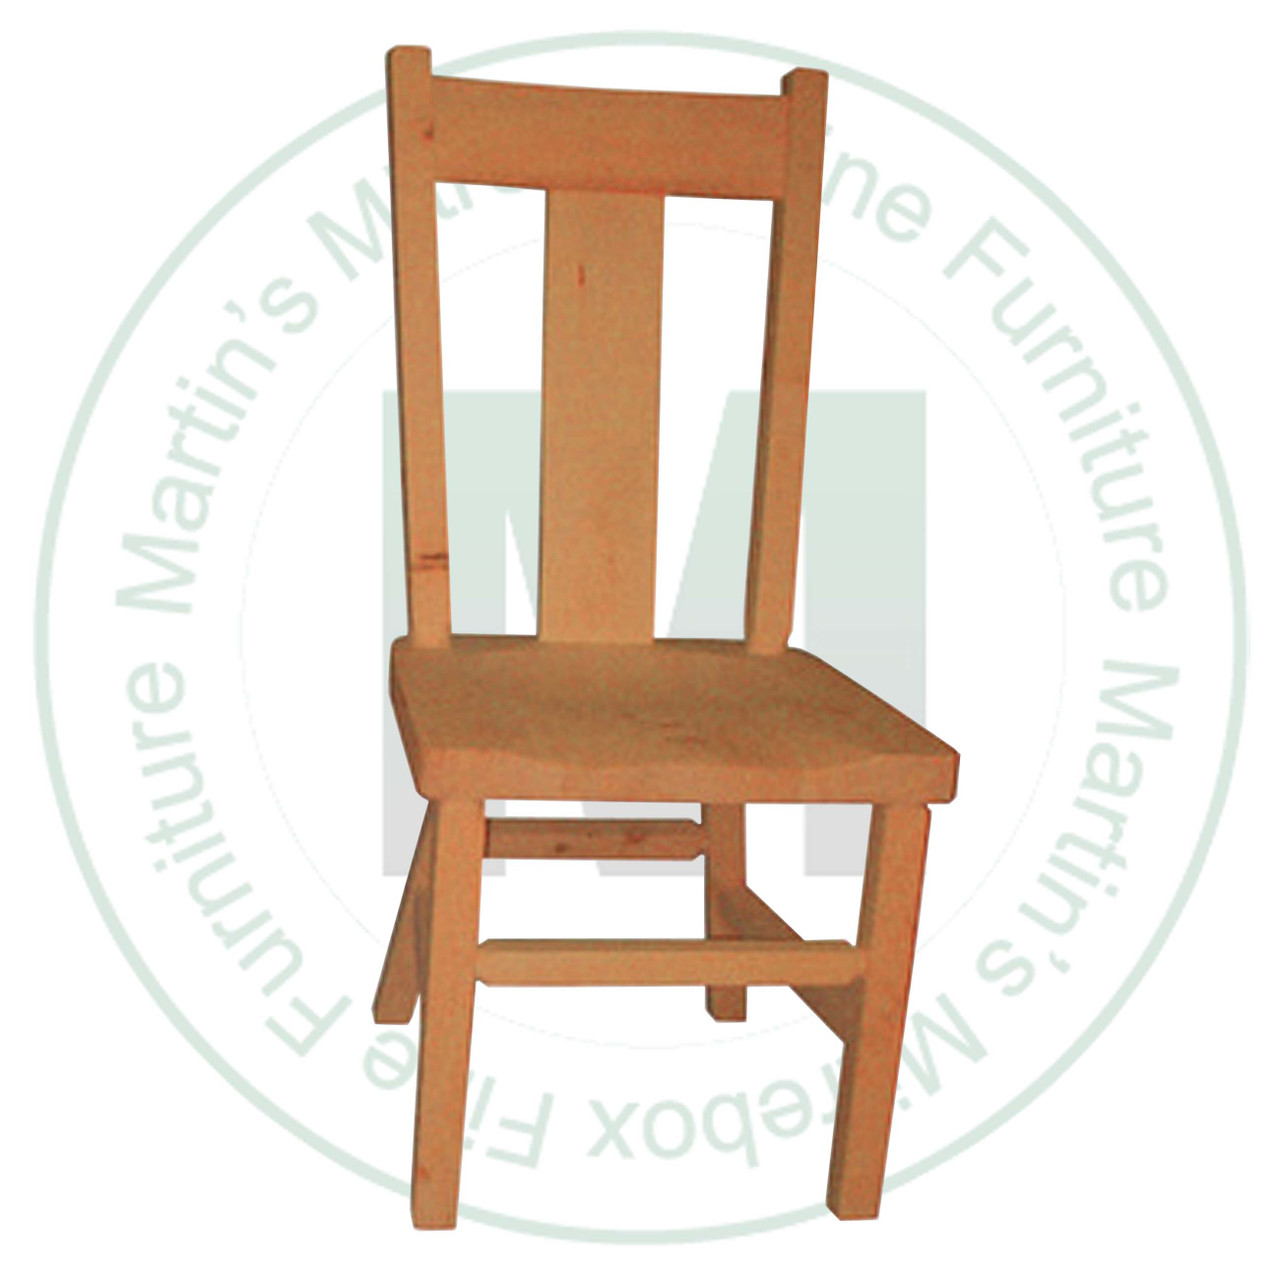 Oak Rustic Wide Slat Back Side Chair Has Wood Seat